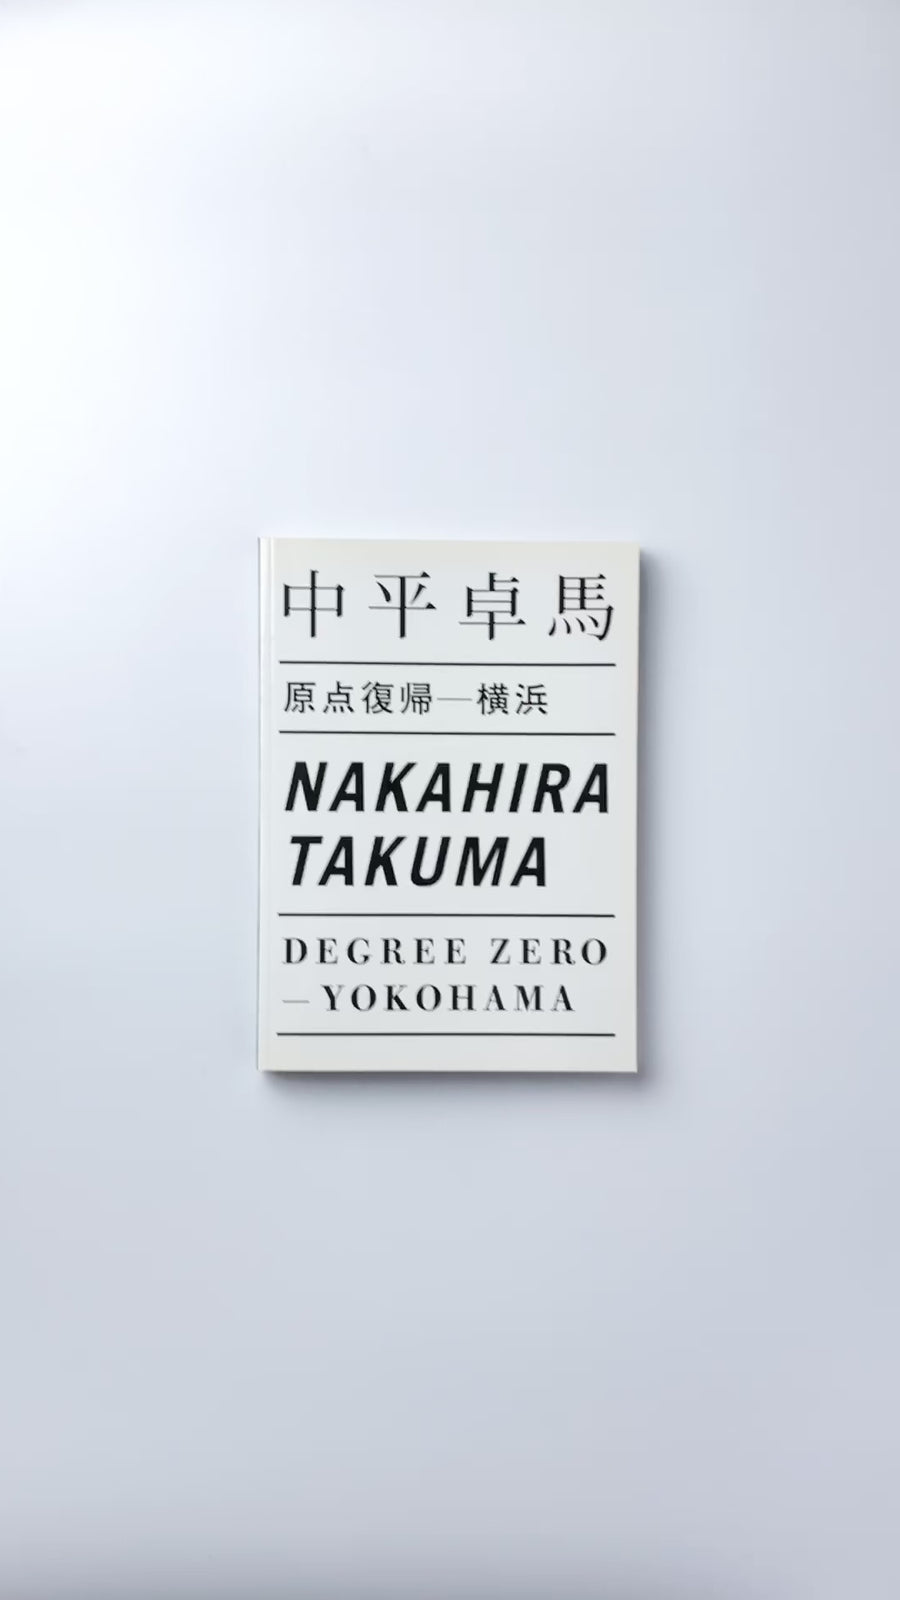 <tc>Takuma Nakahira: Degree Zero—Yokohama</tc>